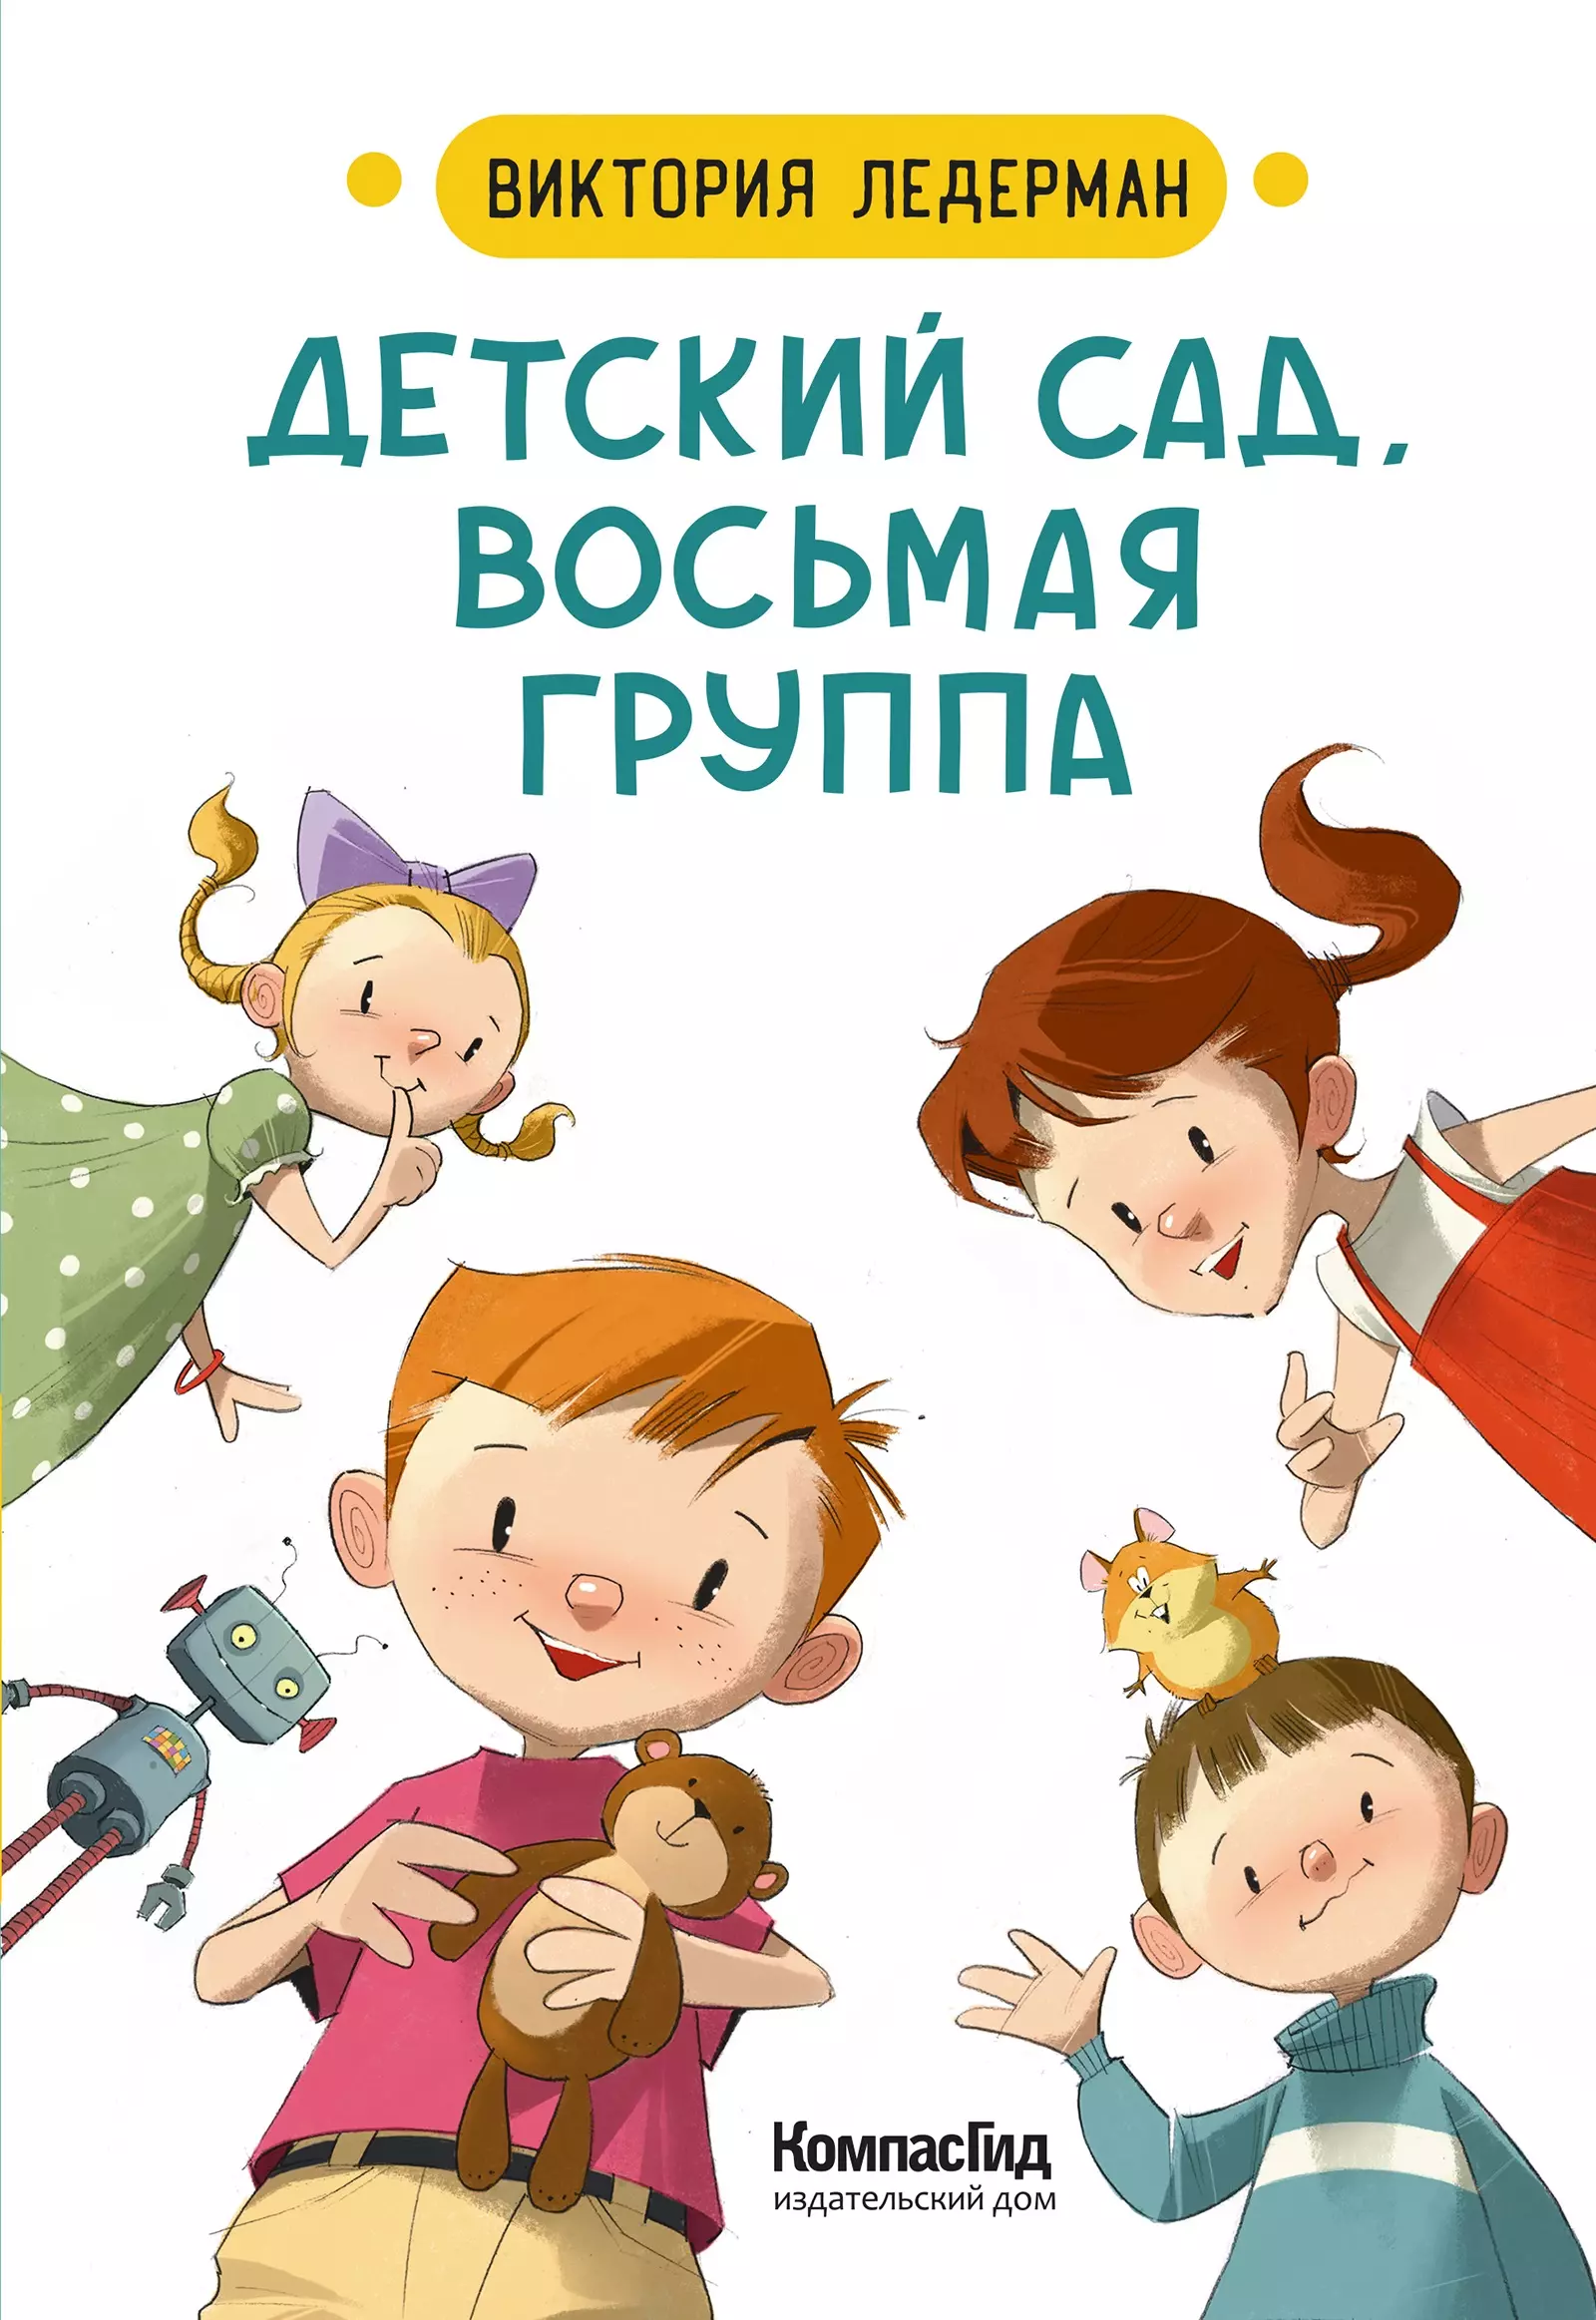 Ледерман Виктория Валерьевна Детский сад, восьмая группа